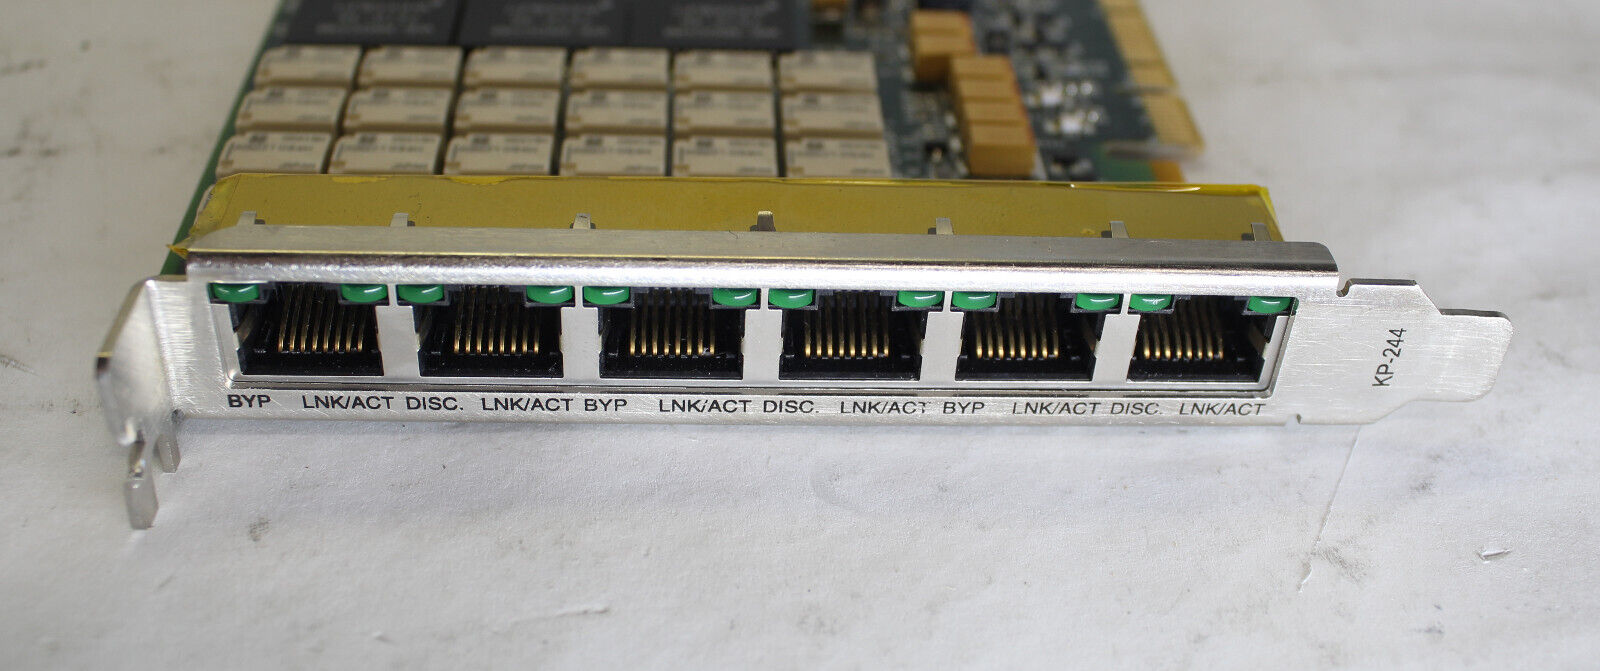 Silicom PEG6BPi6-SD V1.1 Quad Port Copper Gigabit Ethernet PCI Express Adapter